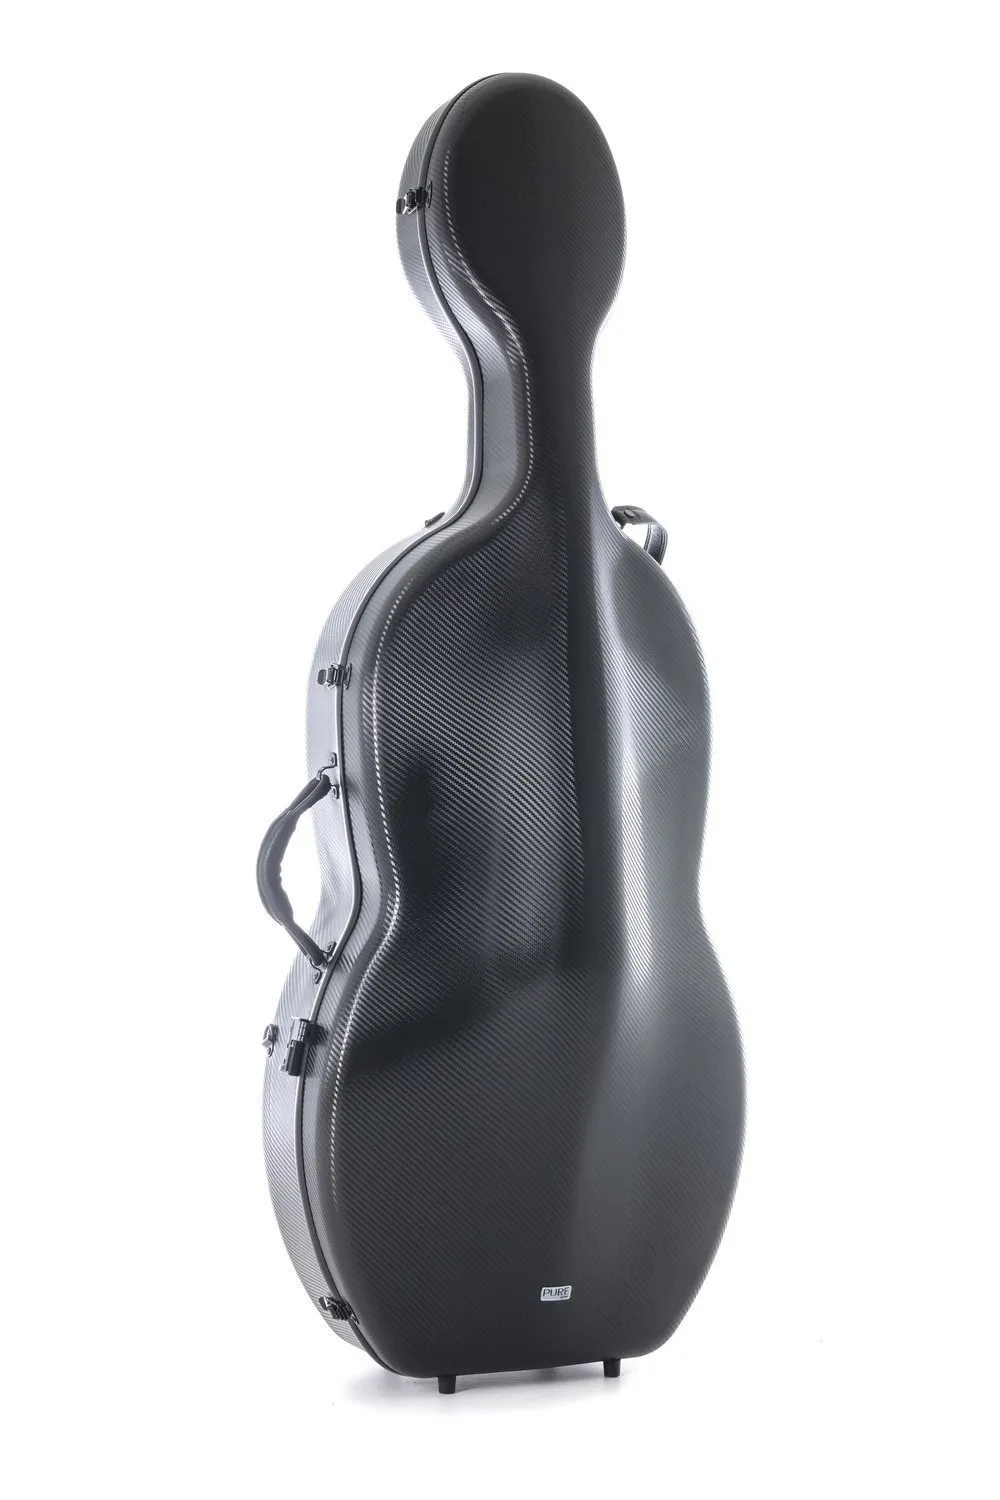 GEWA Pure Polycarbonat 4/4 Cello (Violoncello) Koffer (Etui) in schwarz